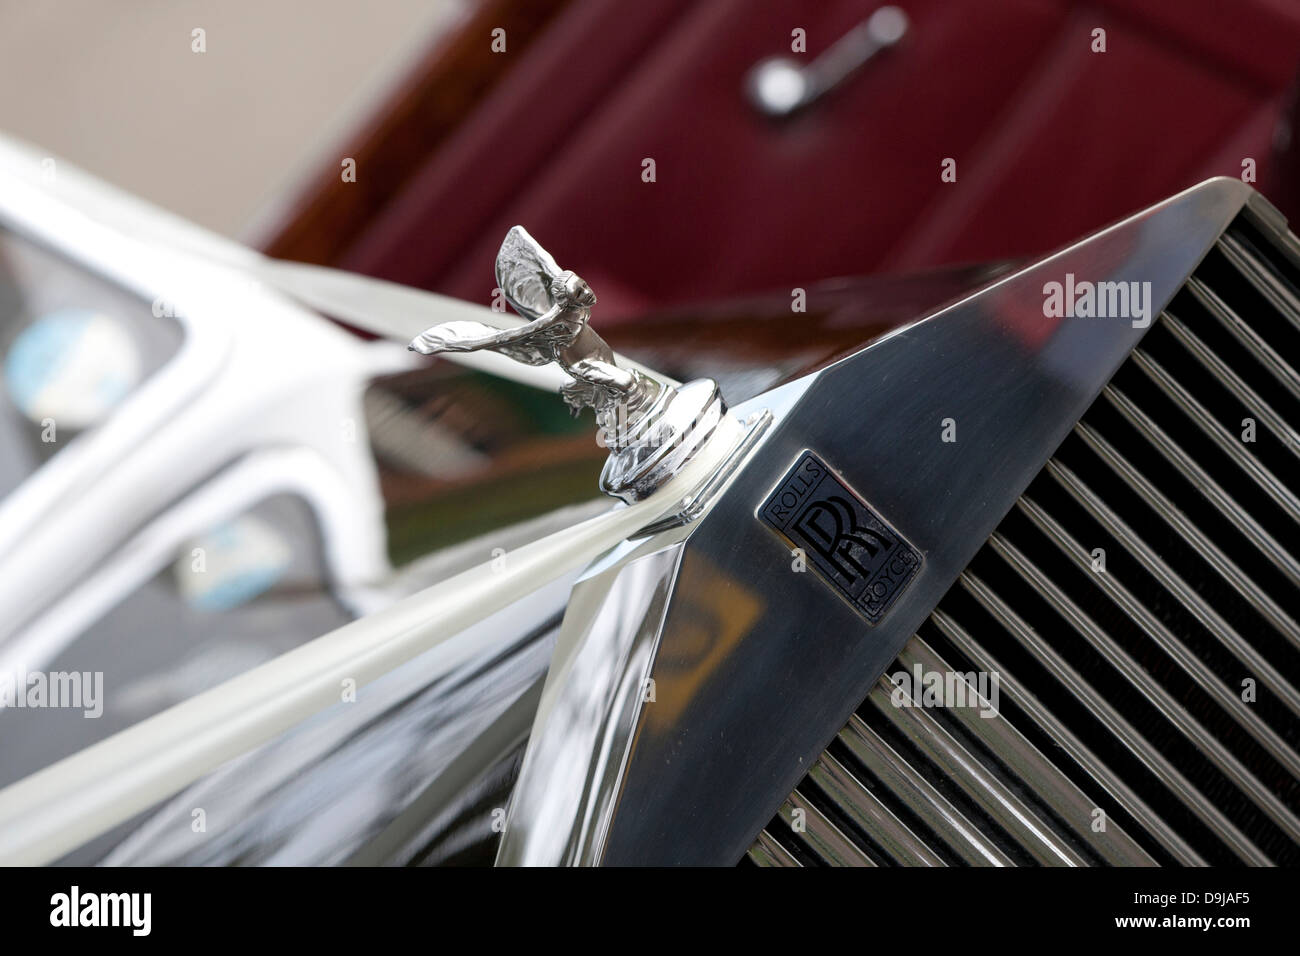 Dettaglio anteriore di Rolls Royce auto nozze che mostra un nastro, griglia, radiatore, spirito di ecstasy emblema Foto Stock